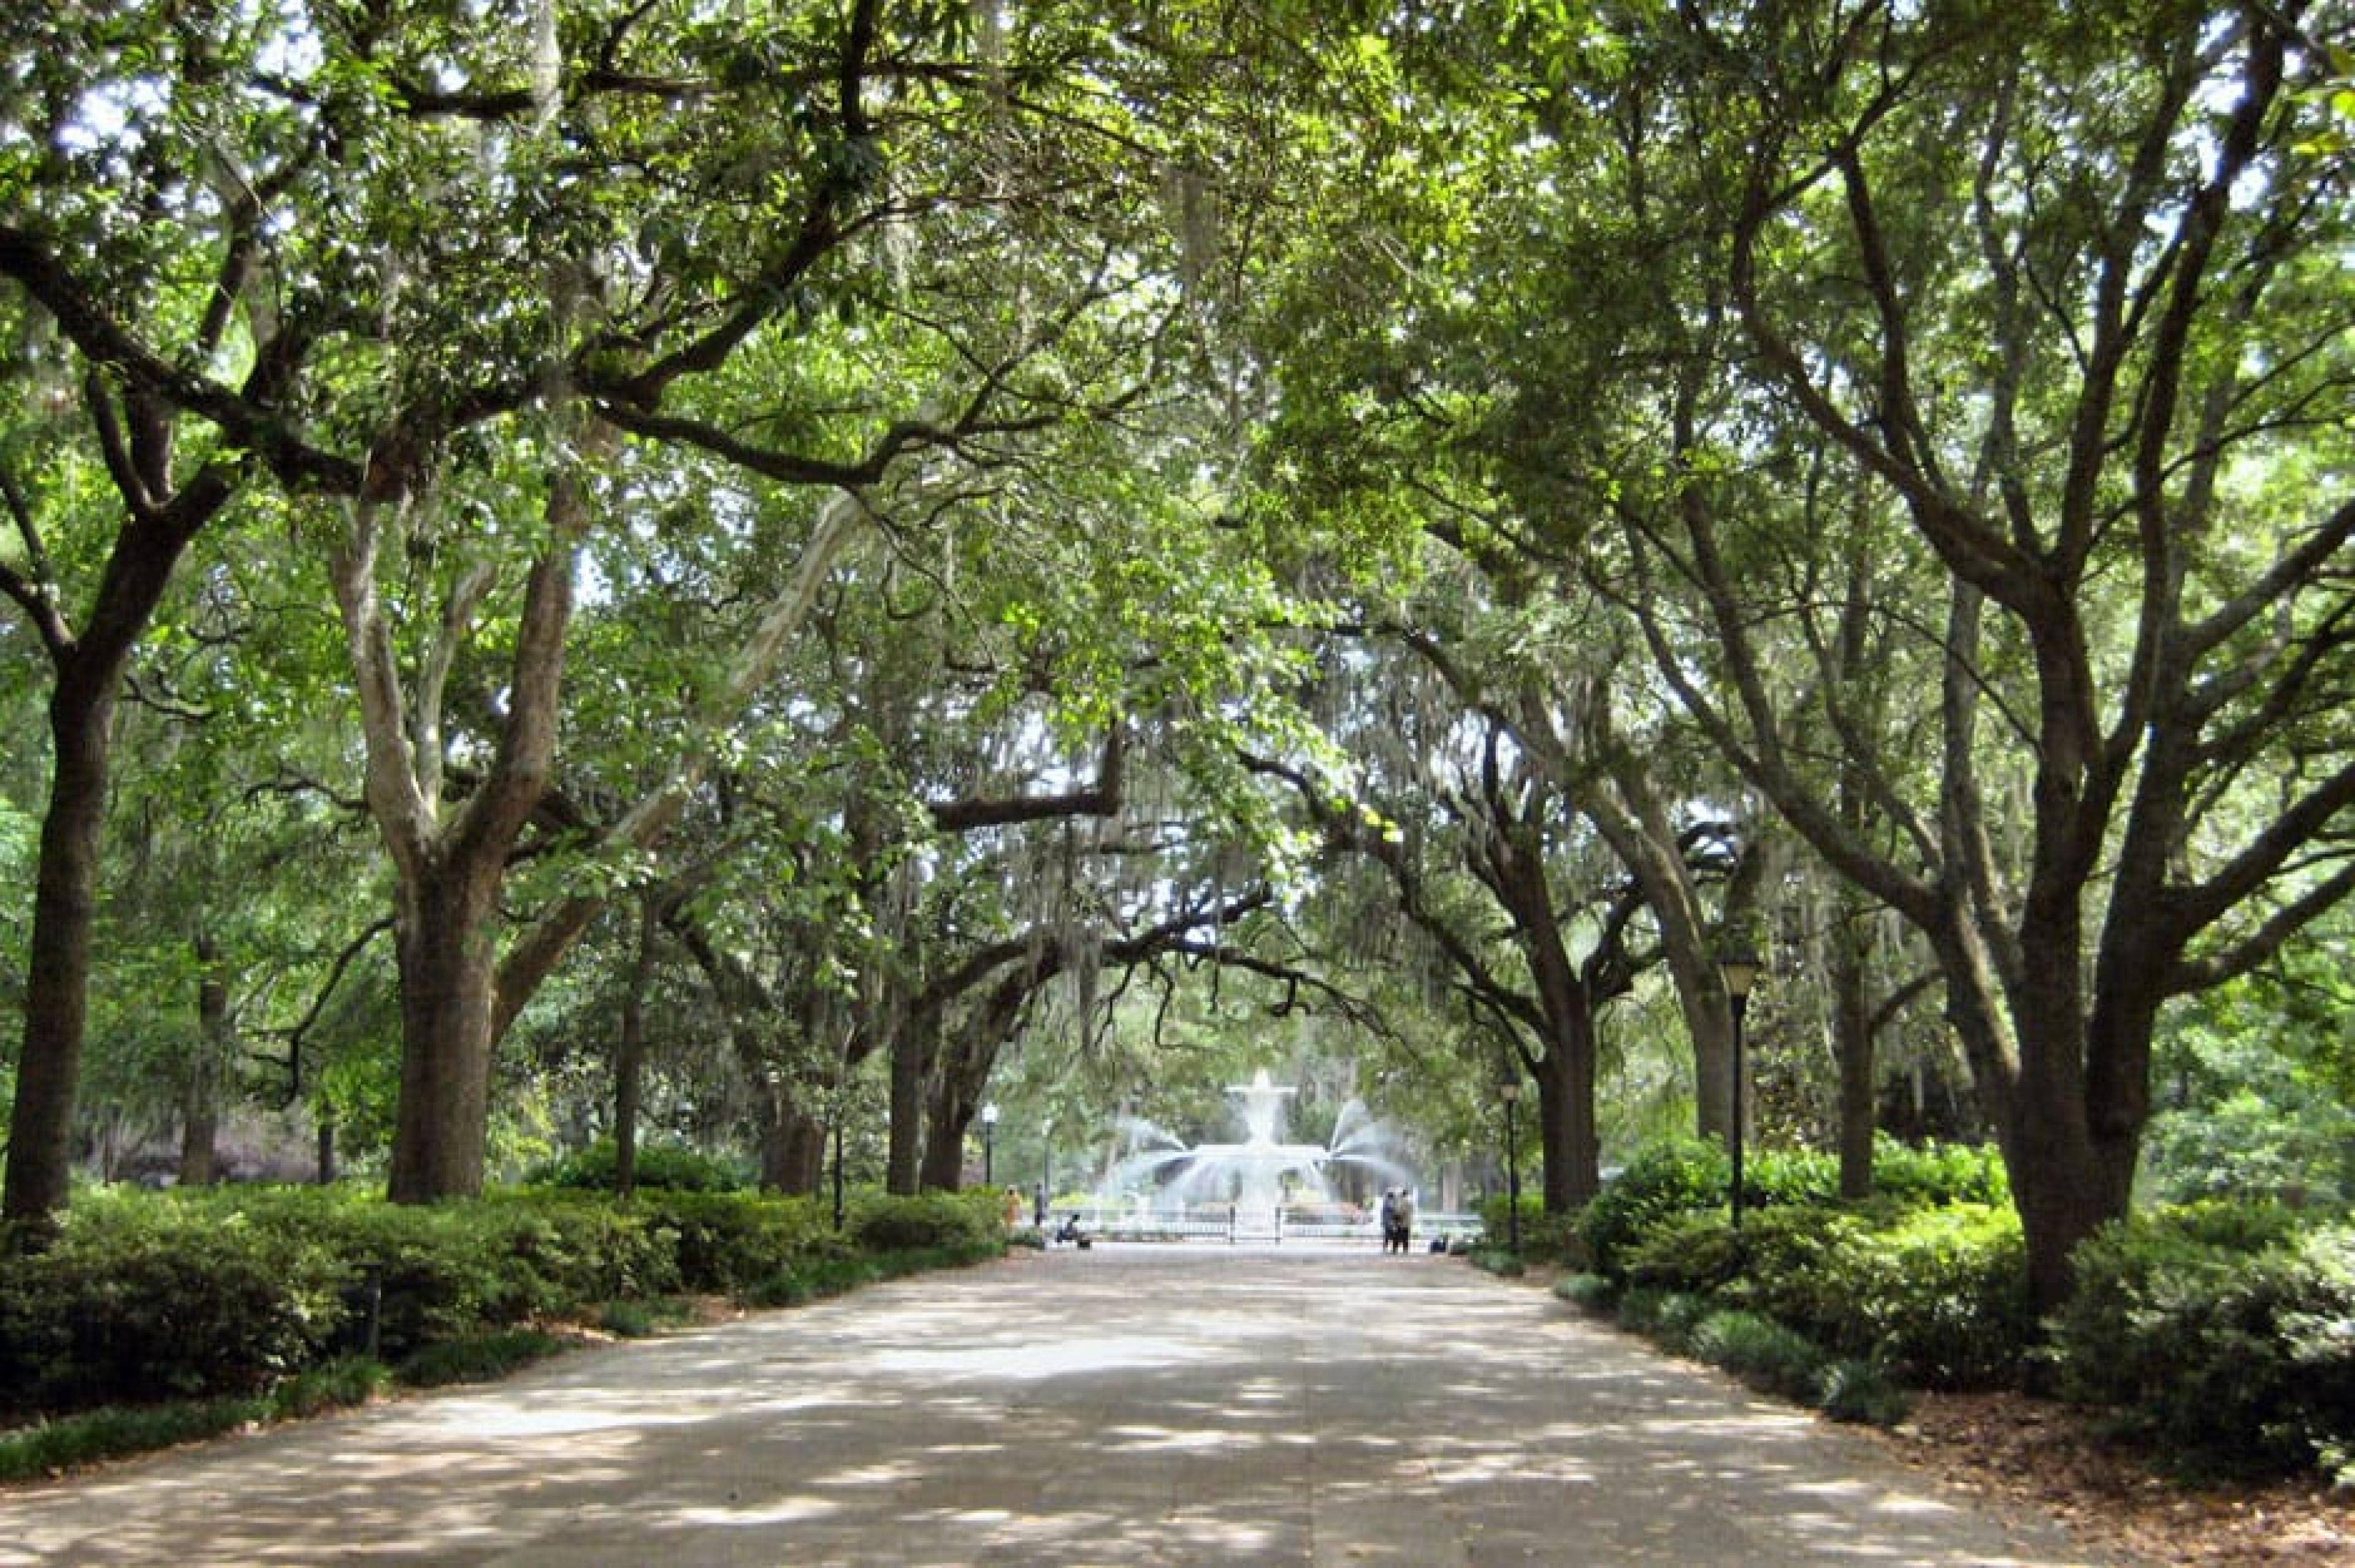 Aerial View - Forsyth Park,Savannah, American South - Courtesy J. Mier